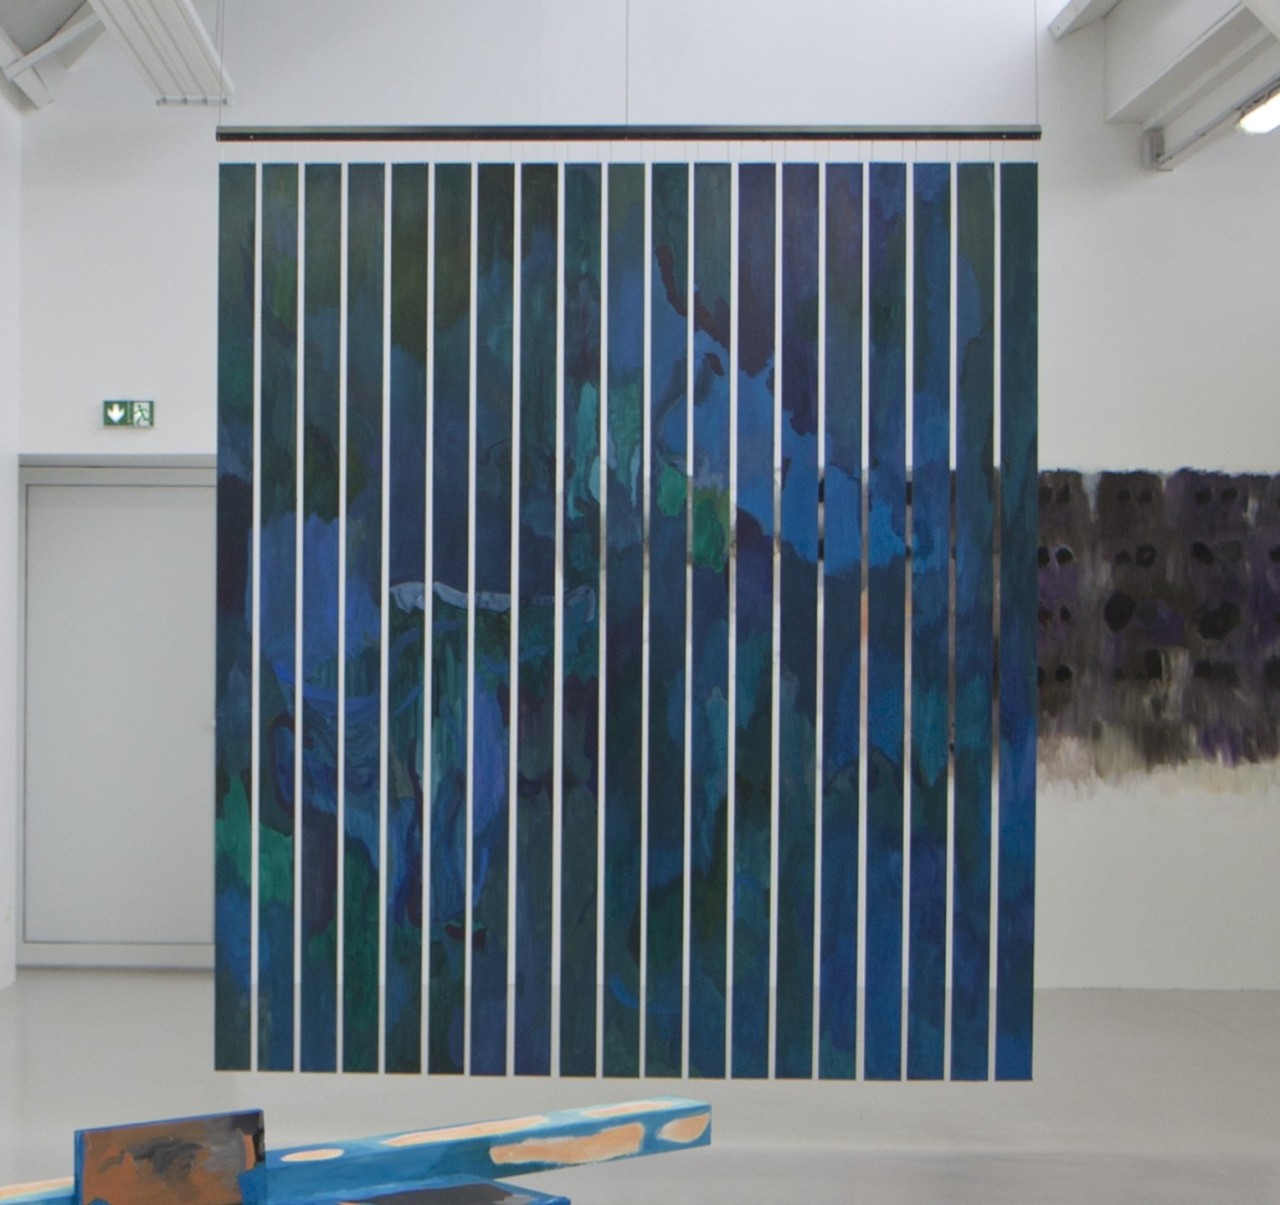 L'oeuvre est une peinture acrylique sur des lames de bois disposées verticalement, alignées horizontalement, et suspendues. La peinture prend des formes colorées sur des tons bleus et verts.